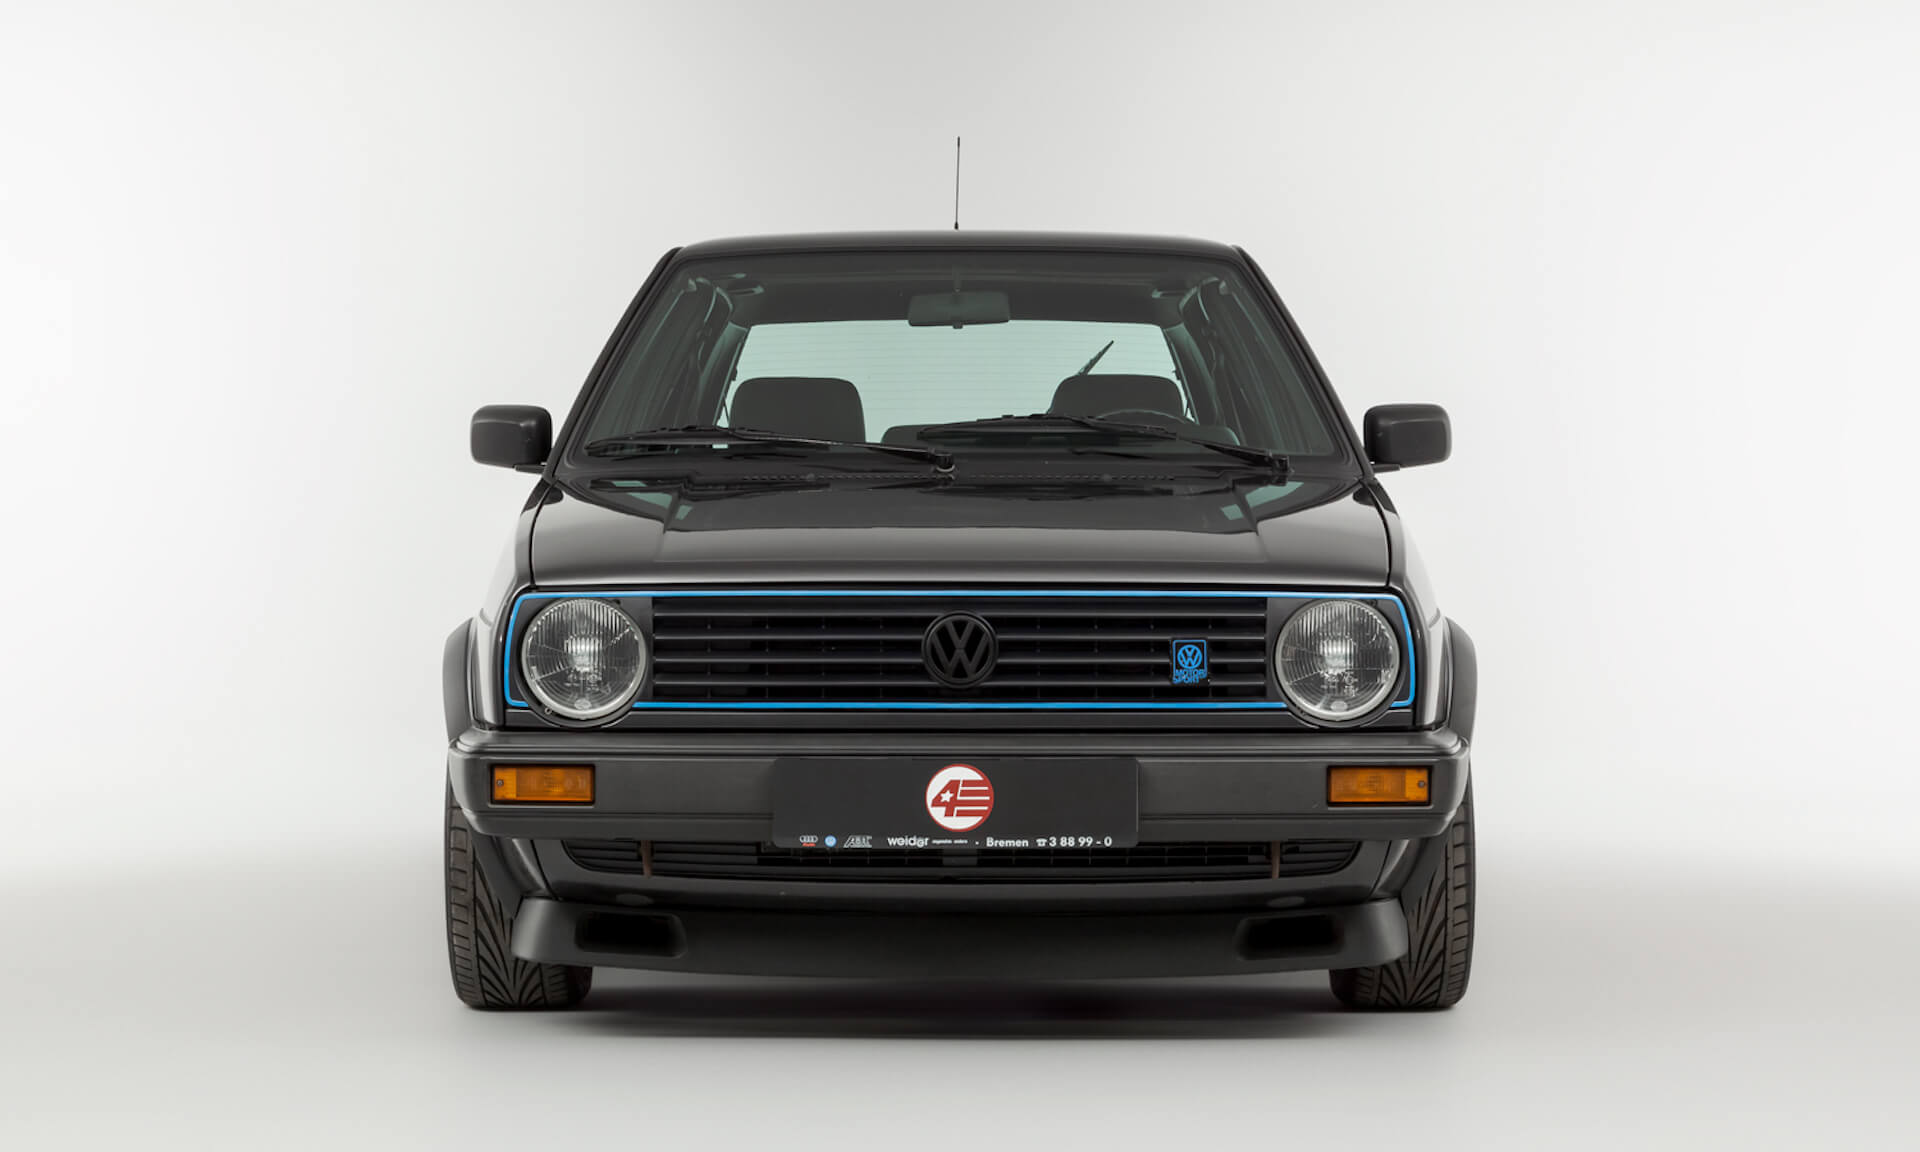 Volkswagen Golf G60 Limited